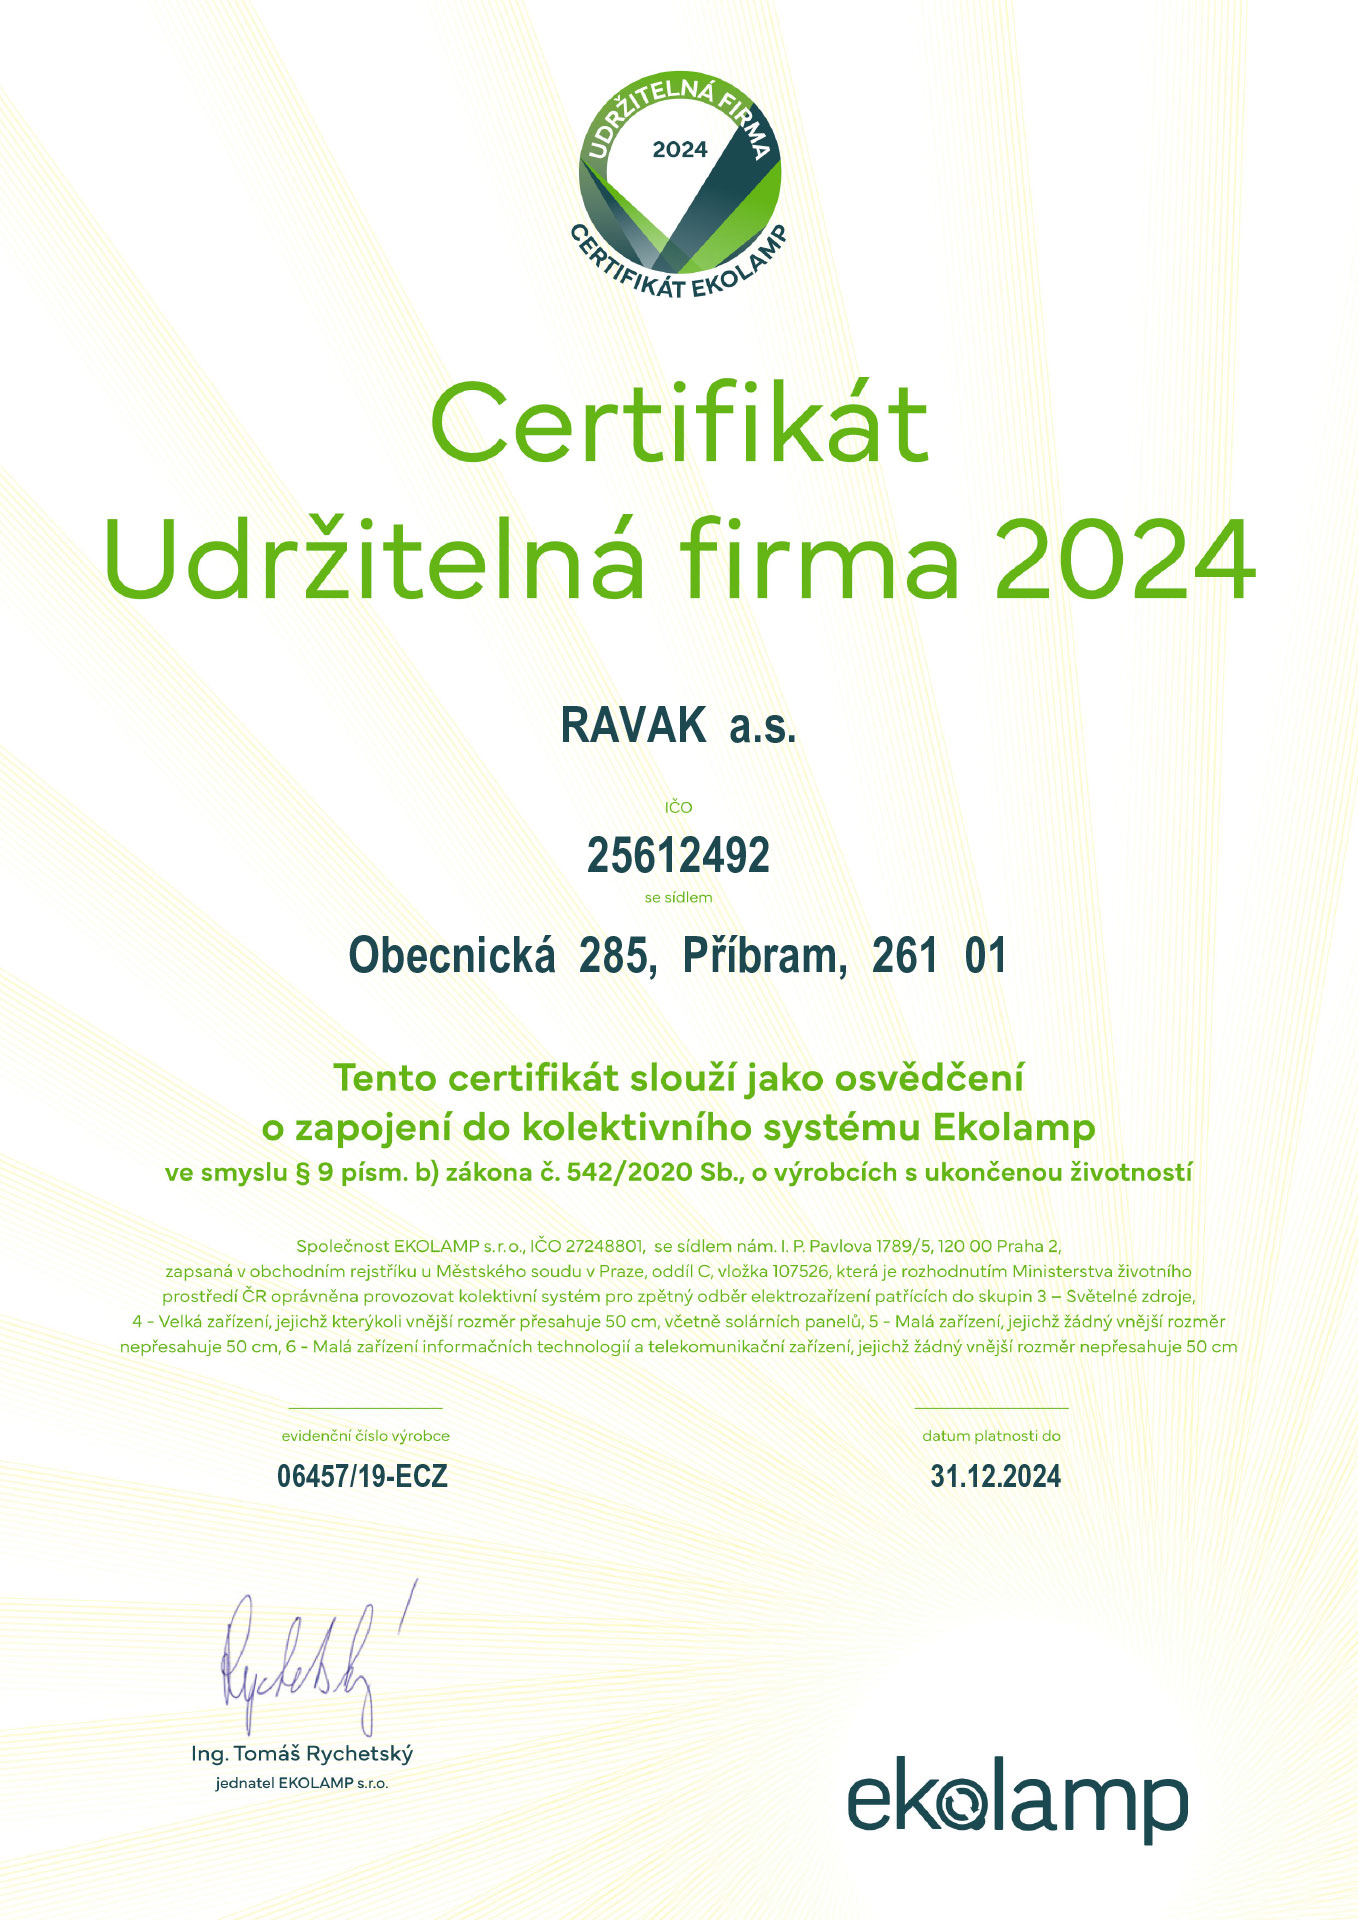 RAVAK certifikát Ekolamp